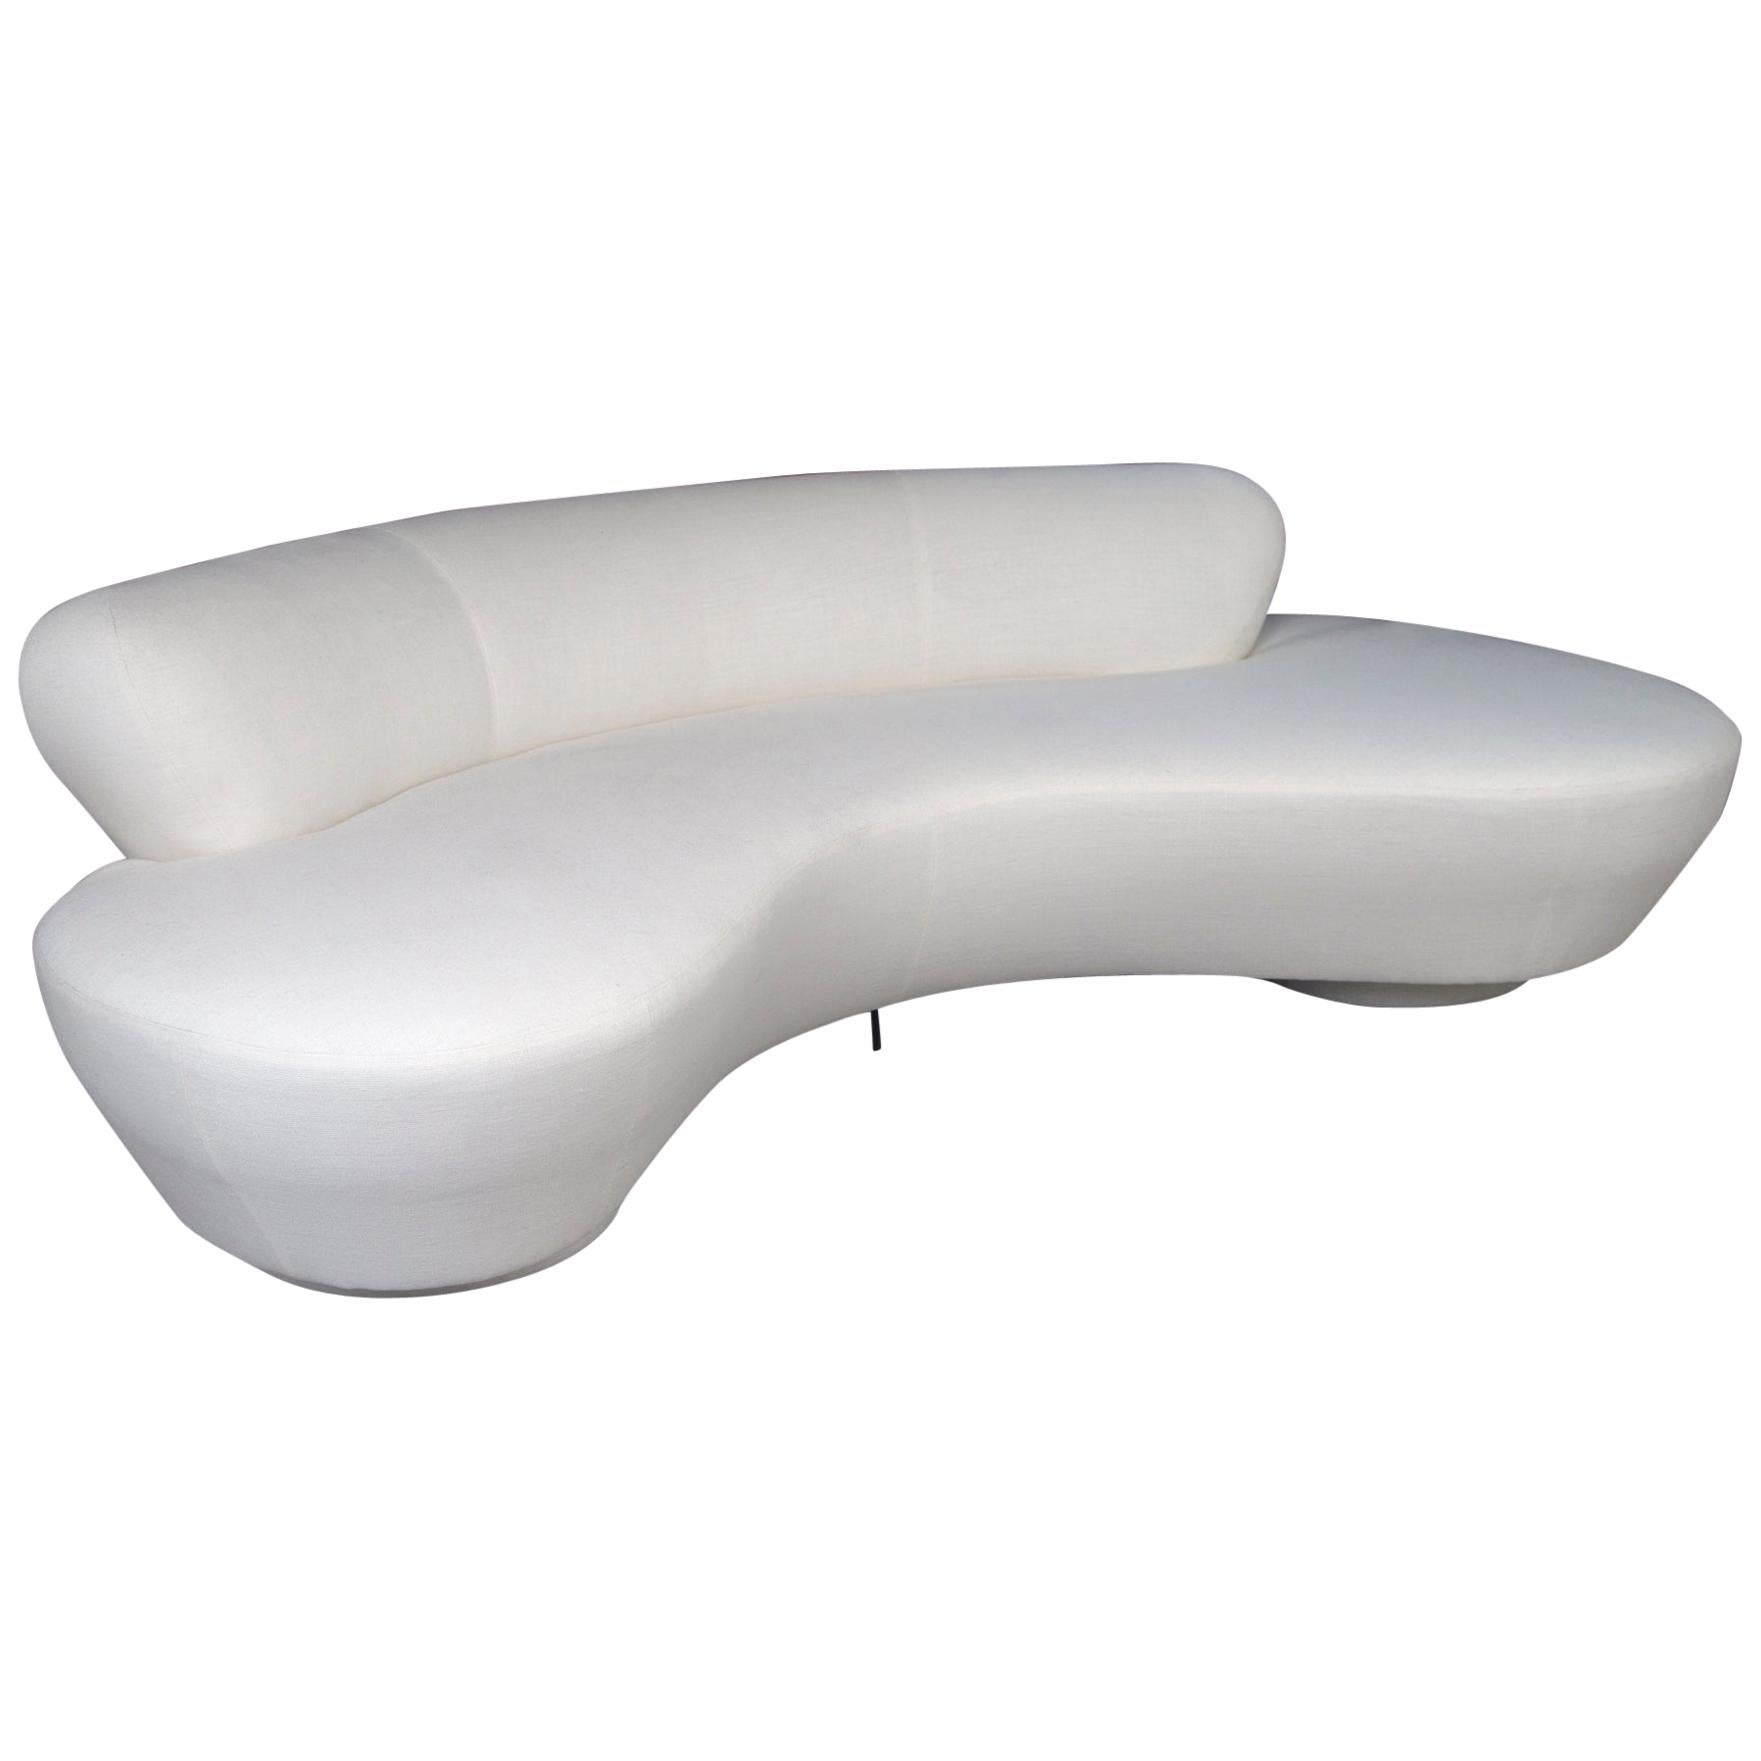 Vladimir Kagan Sofa Reupholstered in White Belgian Linen, Lucite Bracket Support